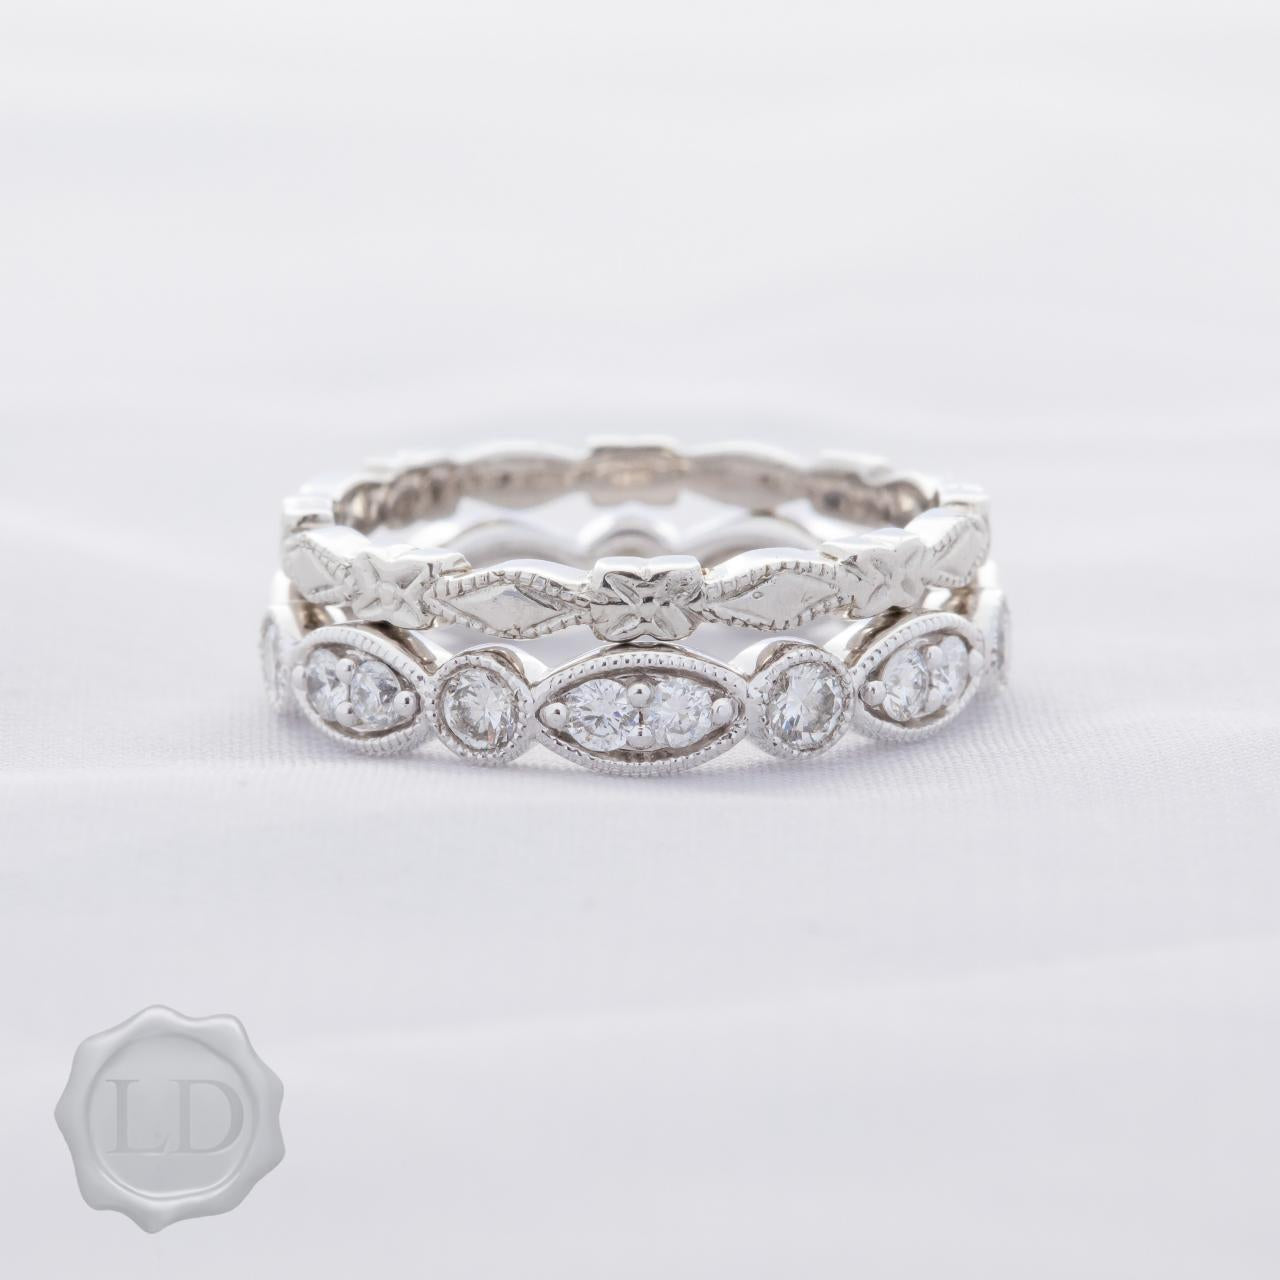 Facet edge, High-carat white gold wedding ring